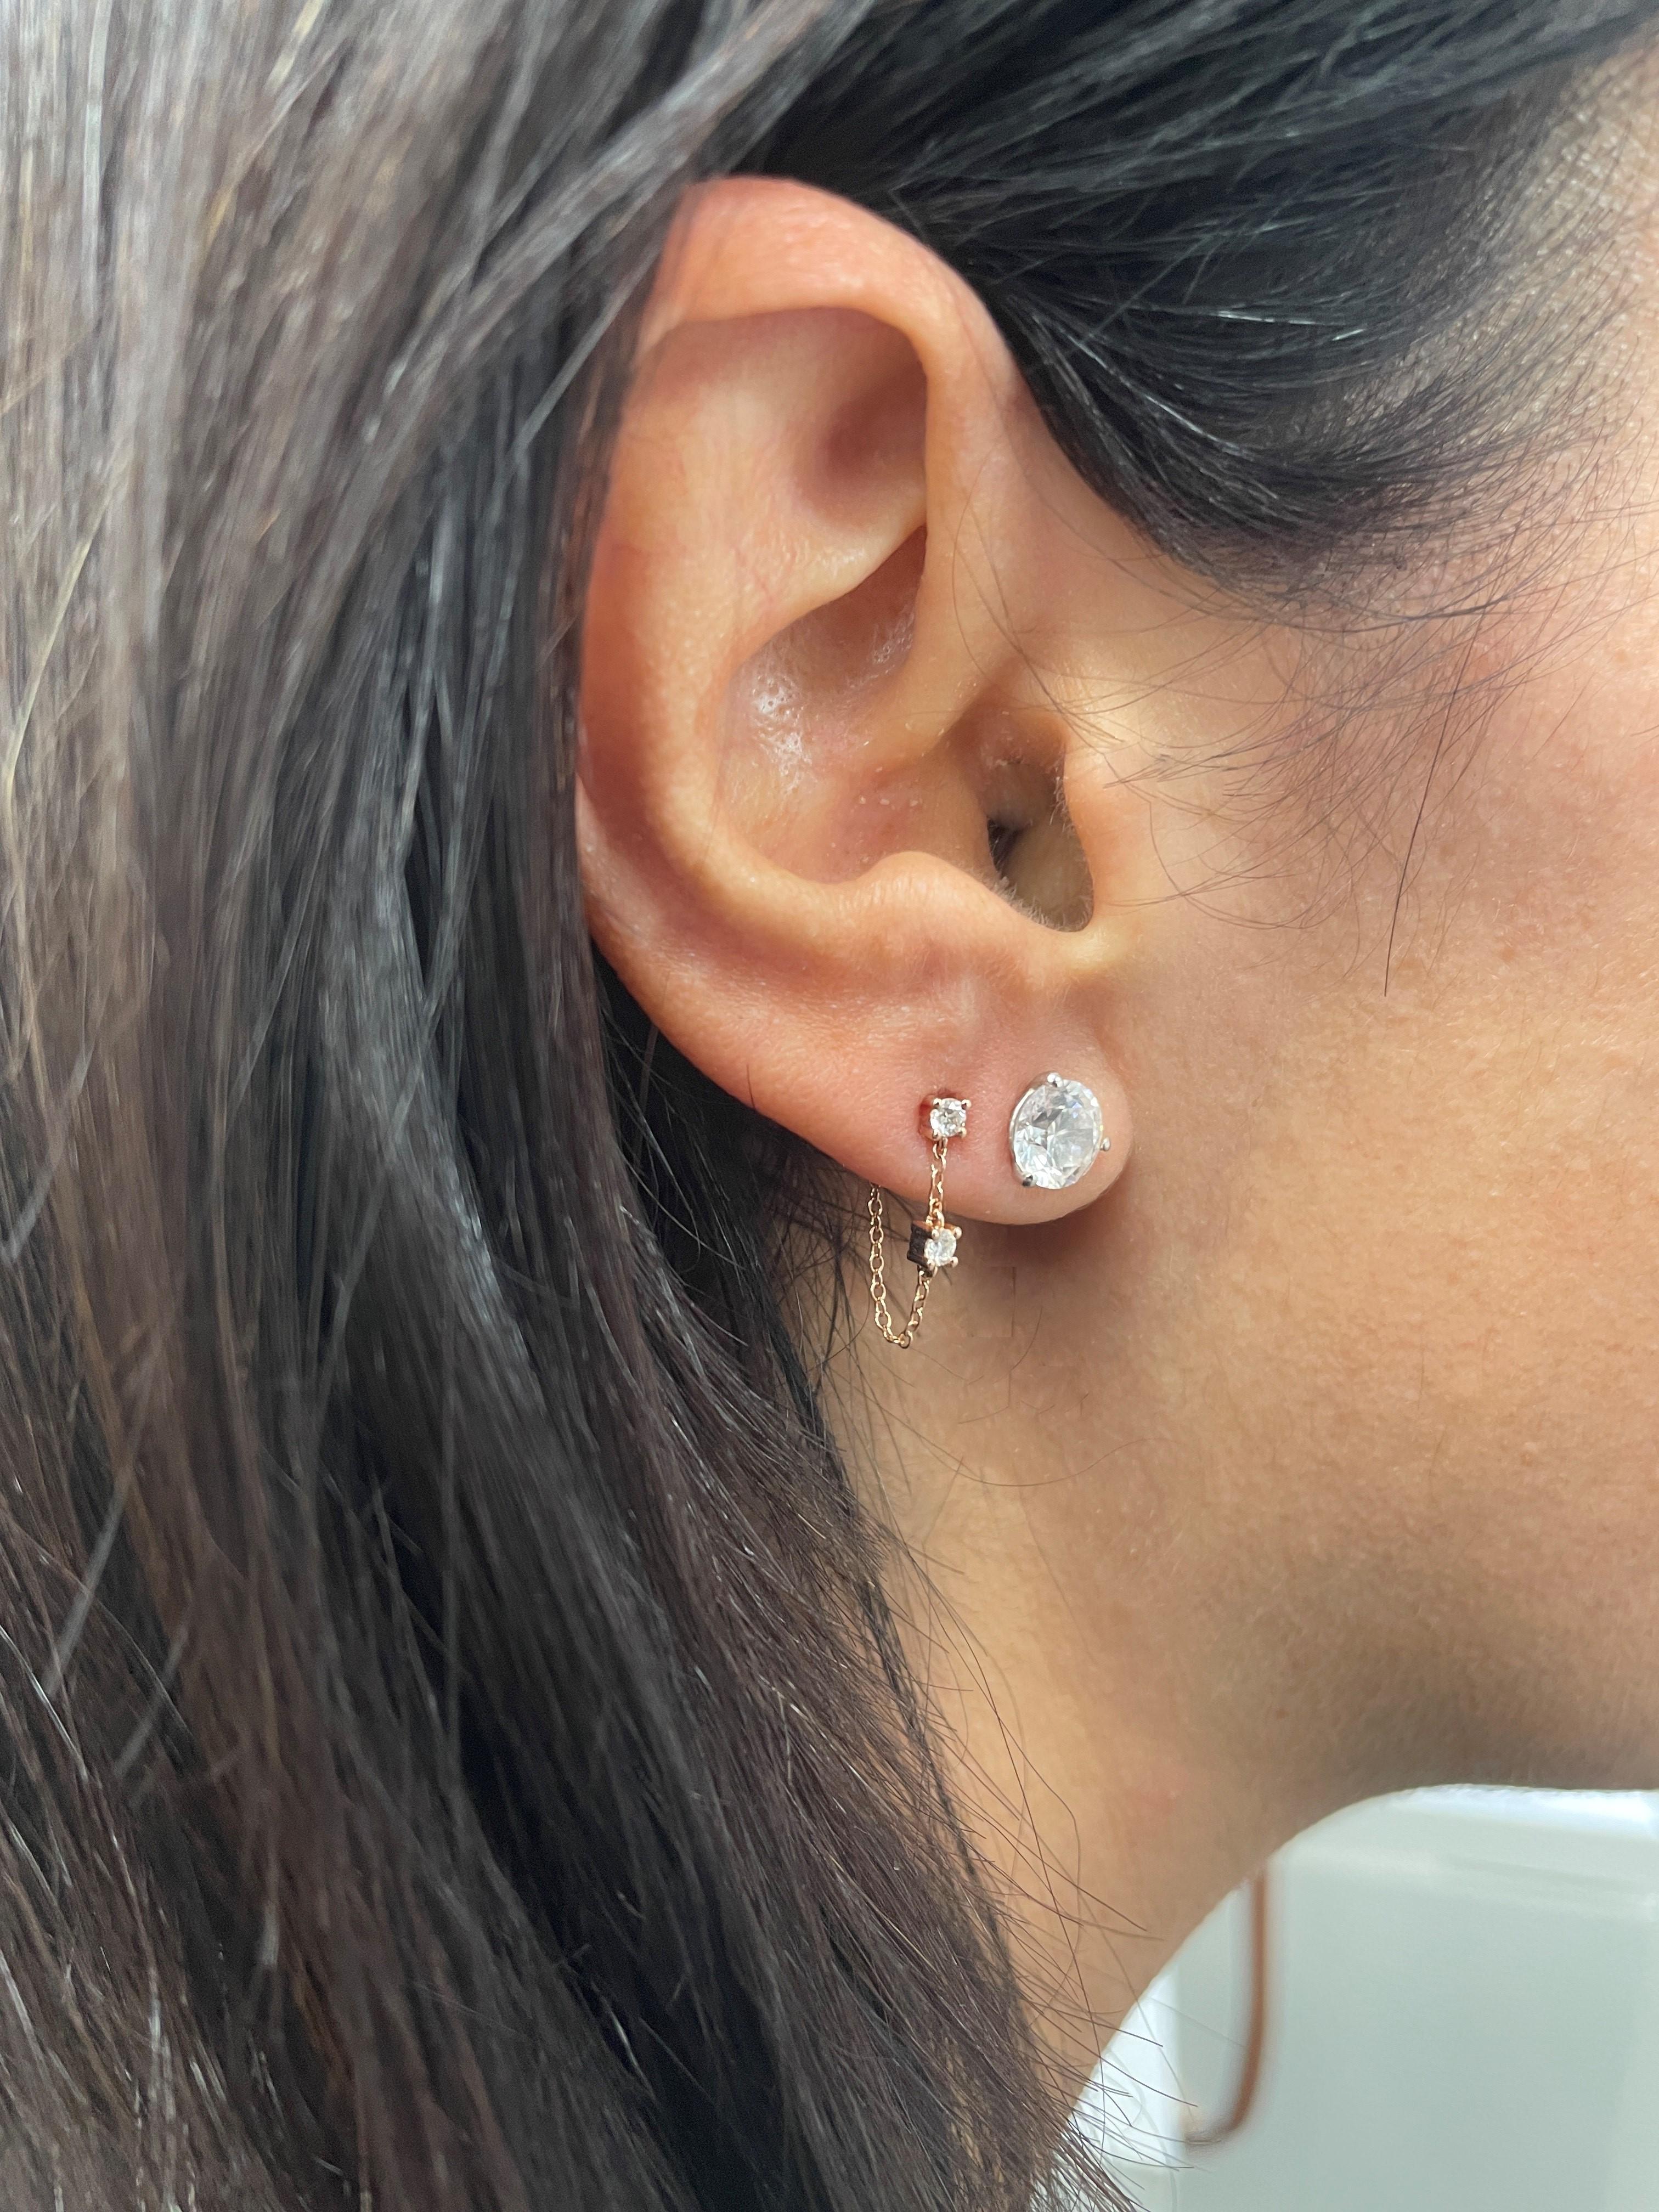 Clous d'oreilles chaîne en or 14 carats et diamants

- Longueur de la boucle d'oreille : 1/2 pouce

Poids des diamants : D0.21

Cette pièce est parfaite pour une utilisation de tous les jours et constitue un cadeau parfait ! 

Nous certifions qu'il